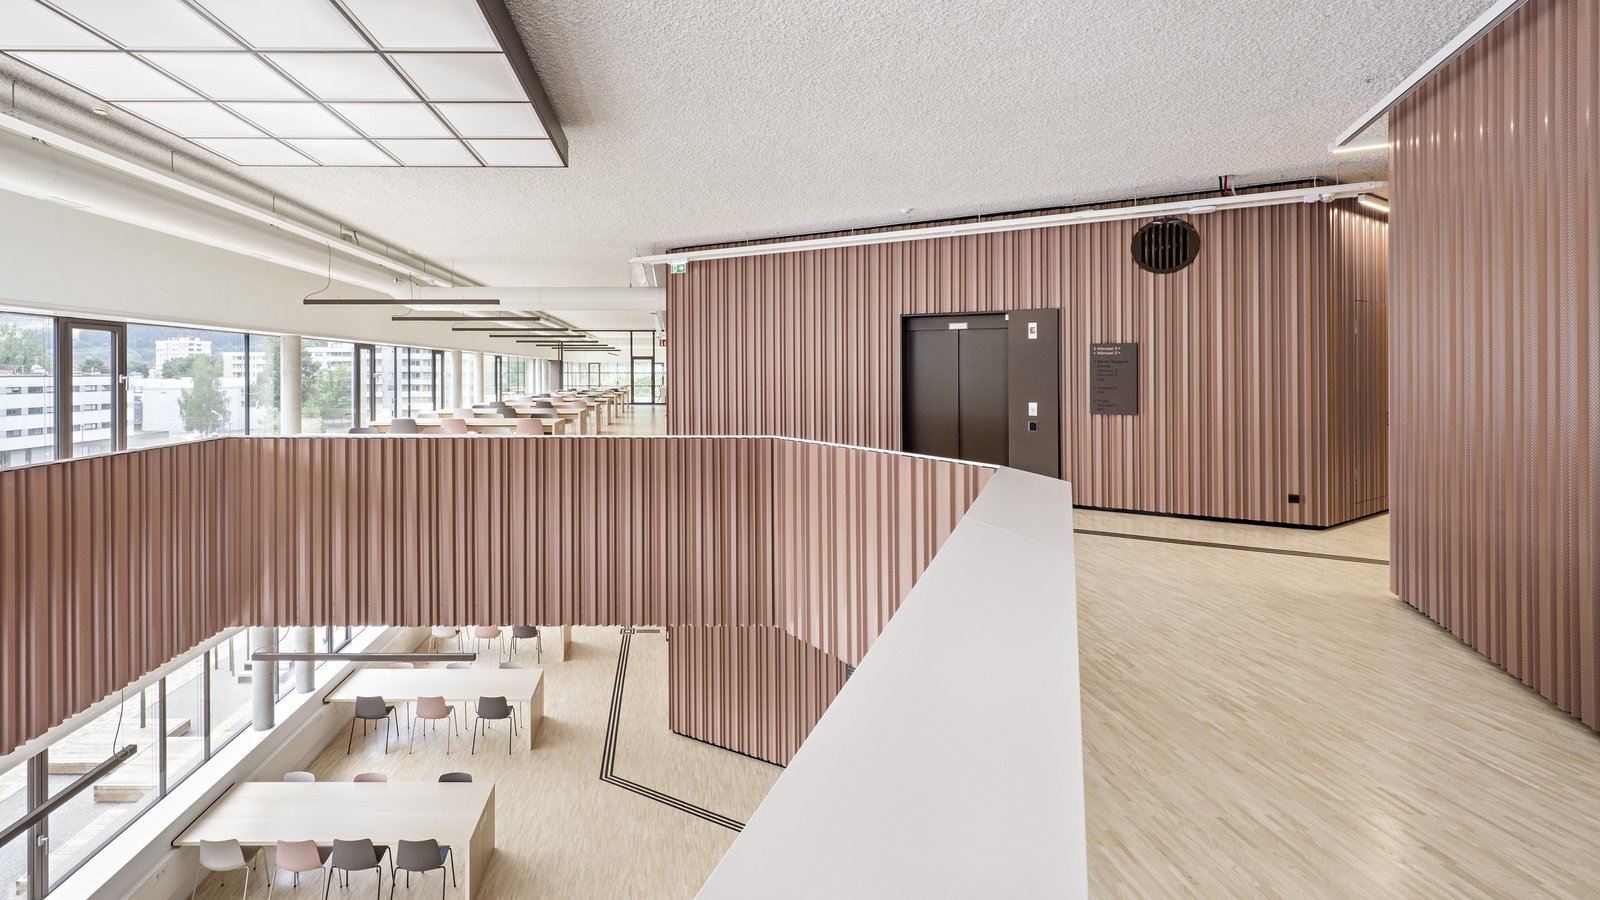 Architektur des neuen Studienzentrums in Leoben